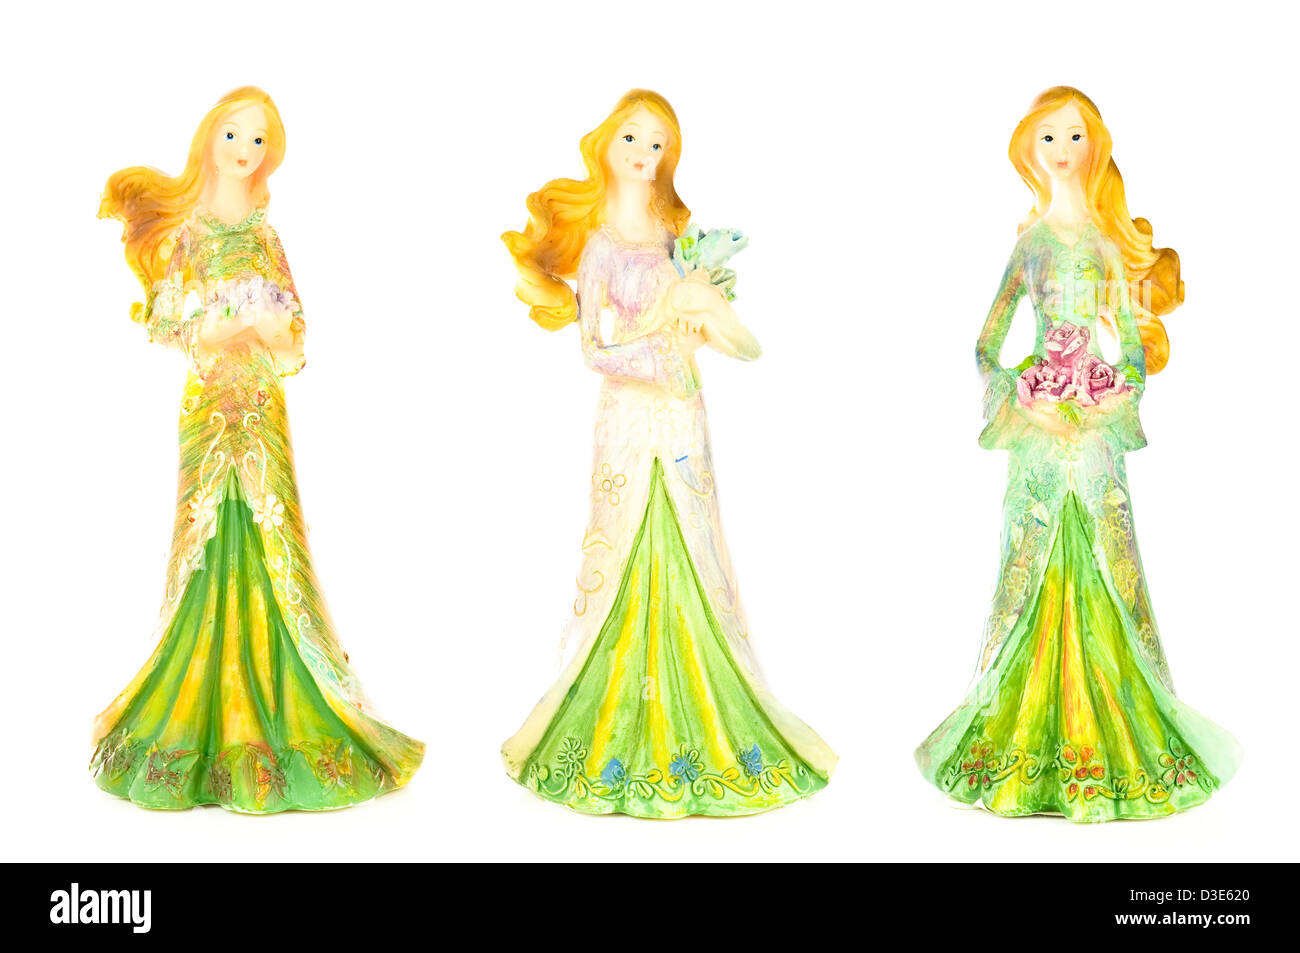 Drei hübsche Dame Statuen alle gekleidet und hält Blumen; isoliert auf weißem Hintergrund. Stockfoto